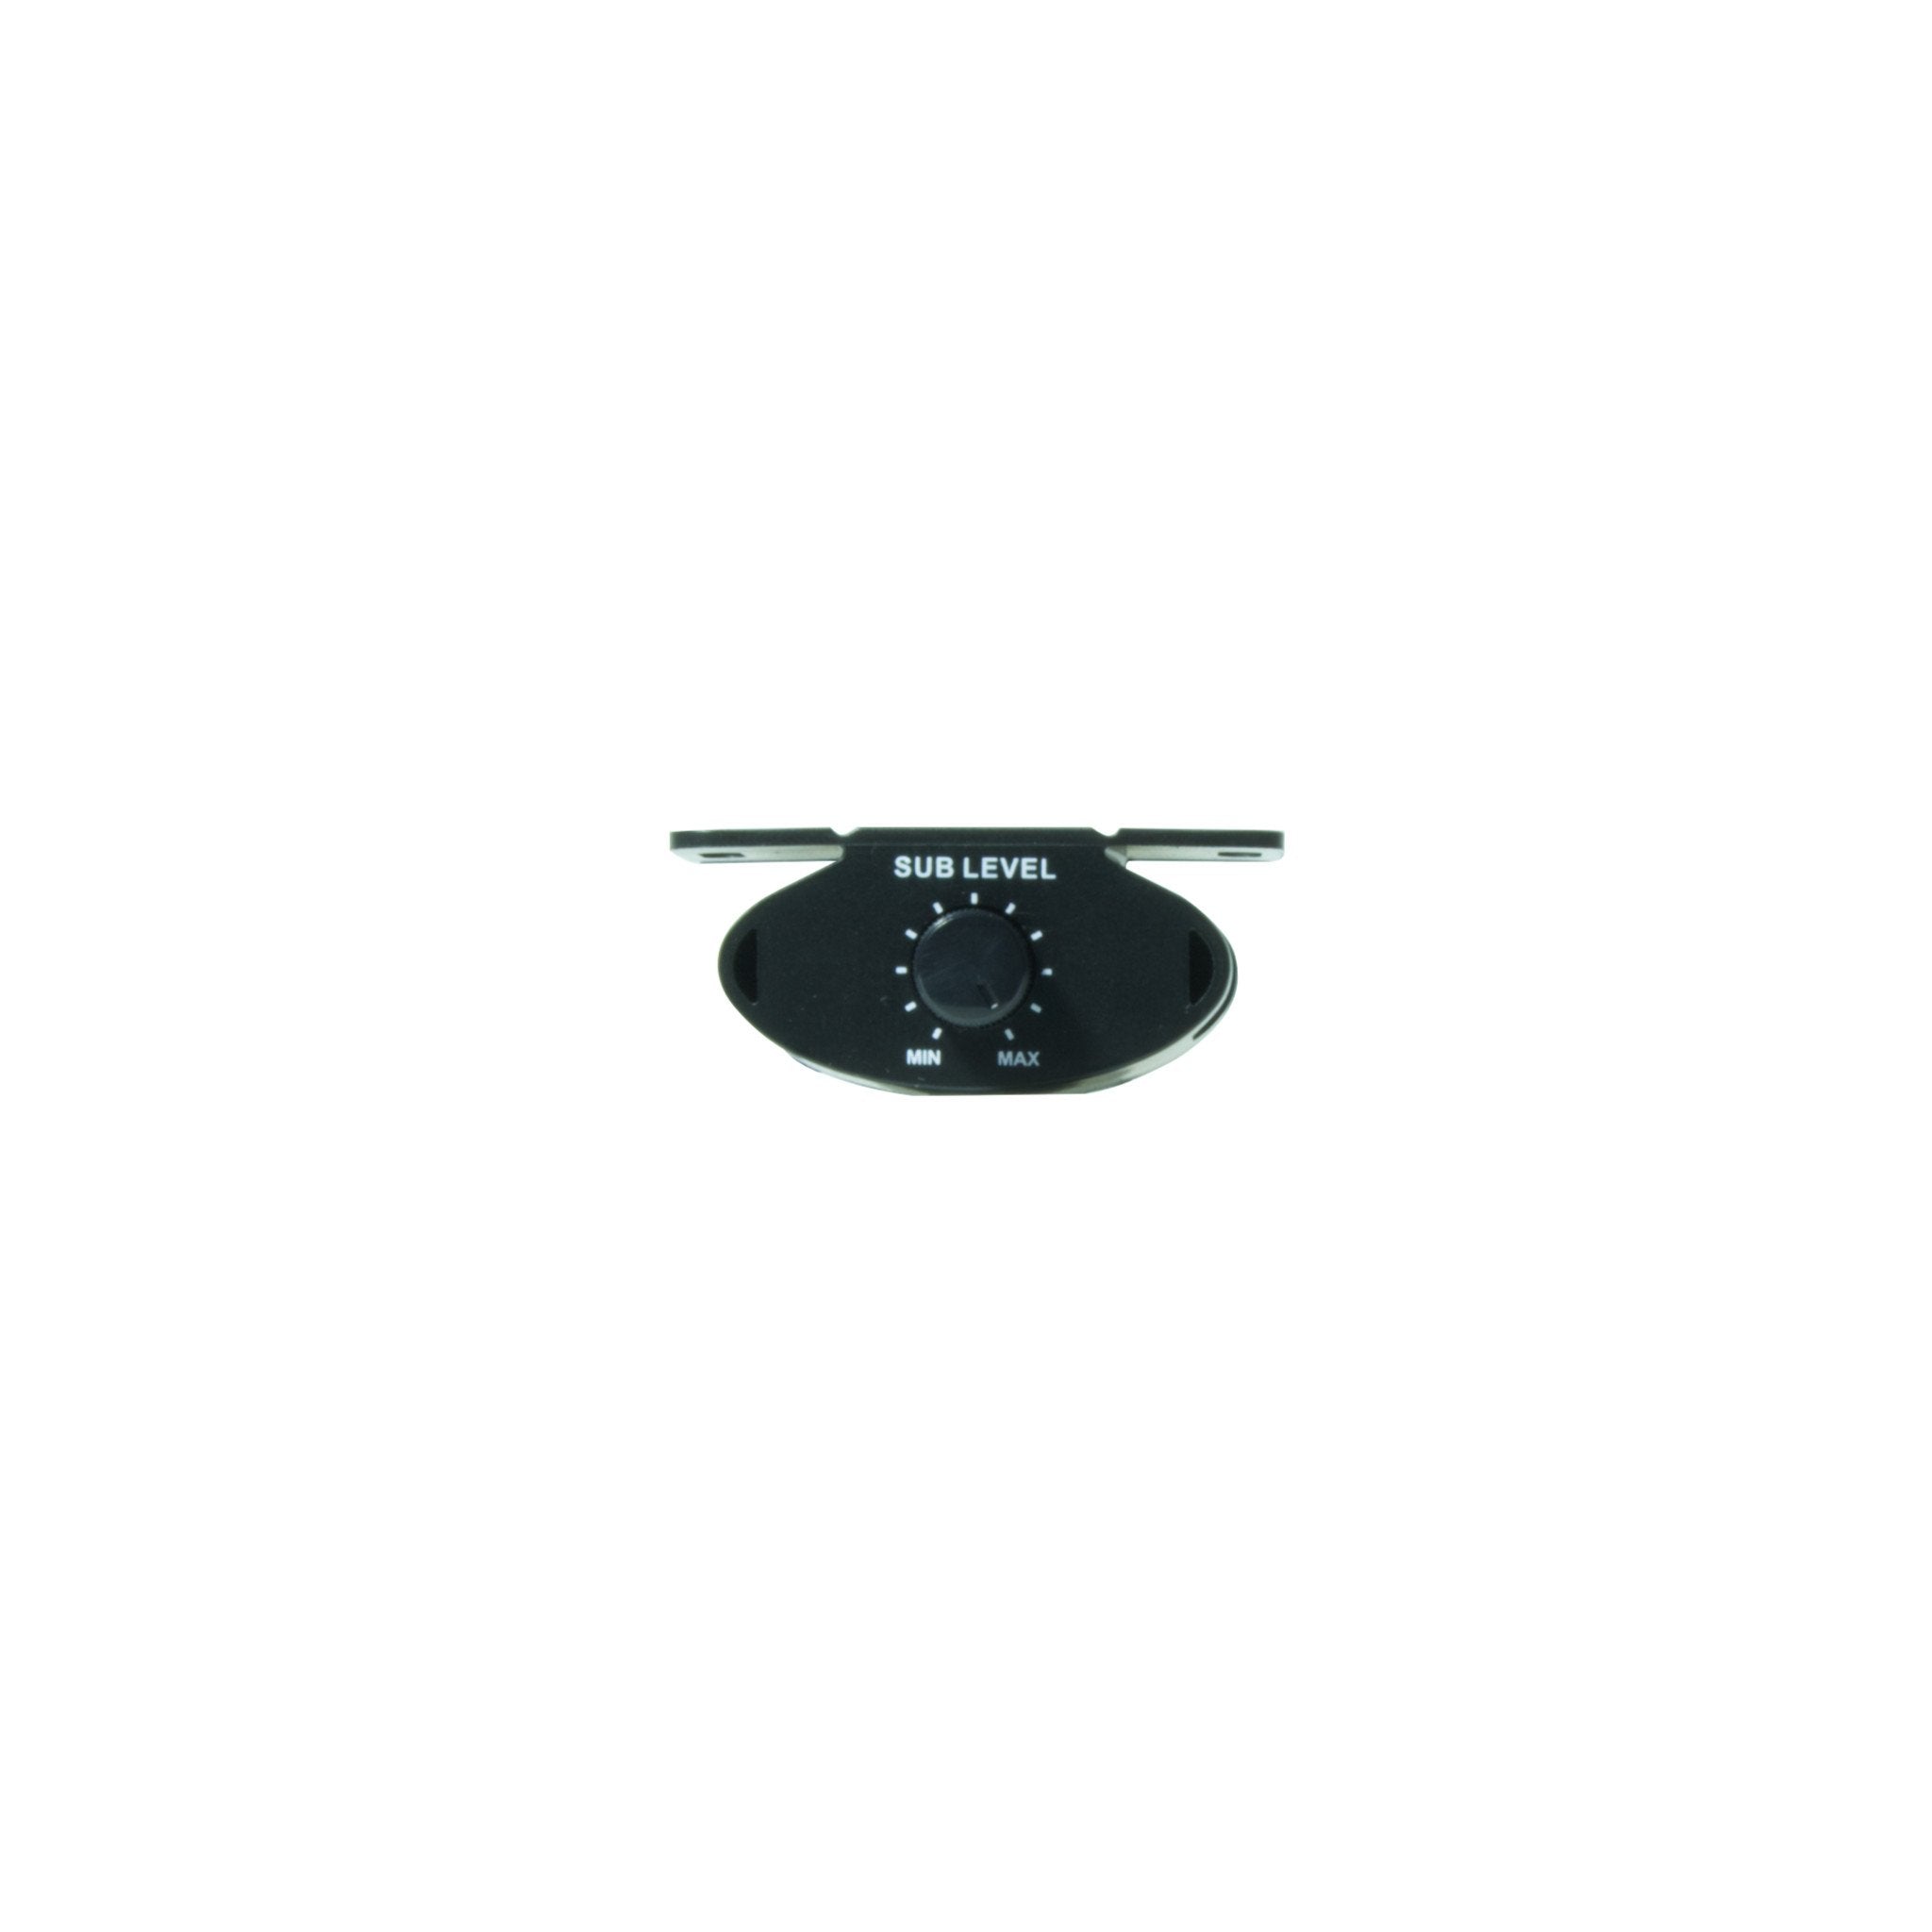 Linertec LT-3900 black car audio monoblock amplifier remote front view